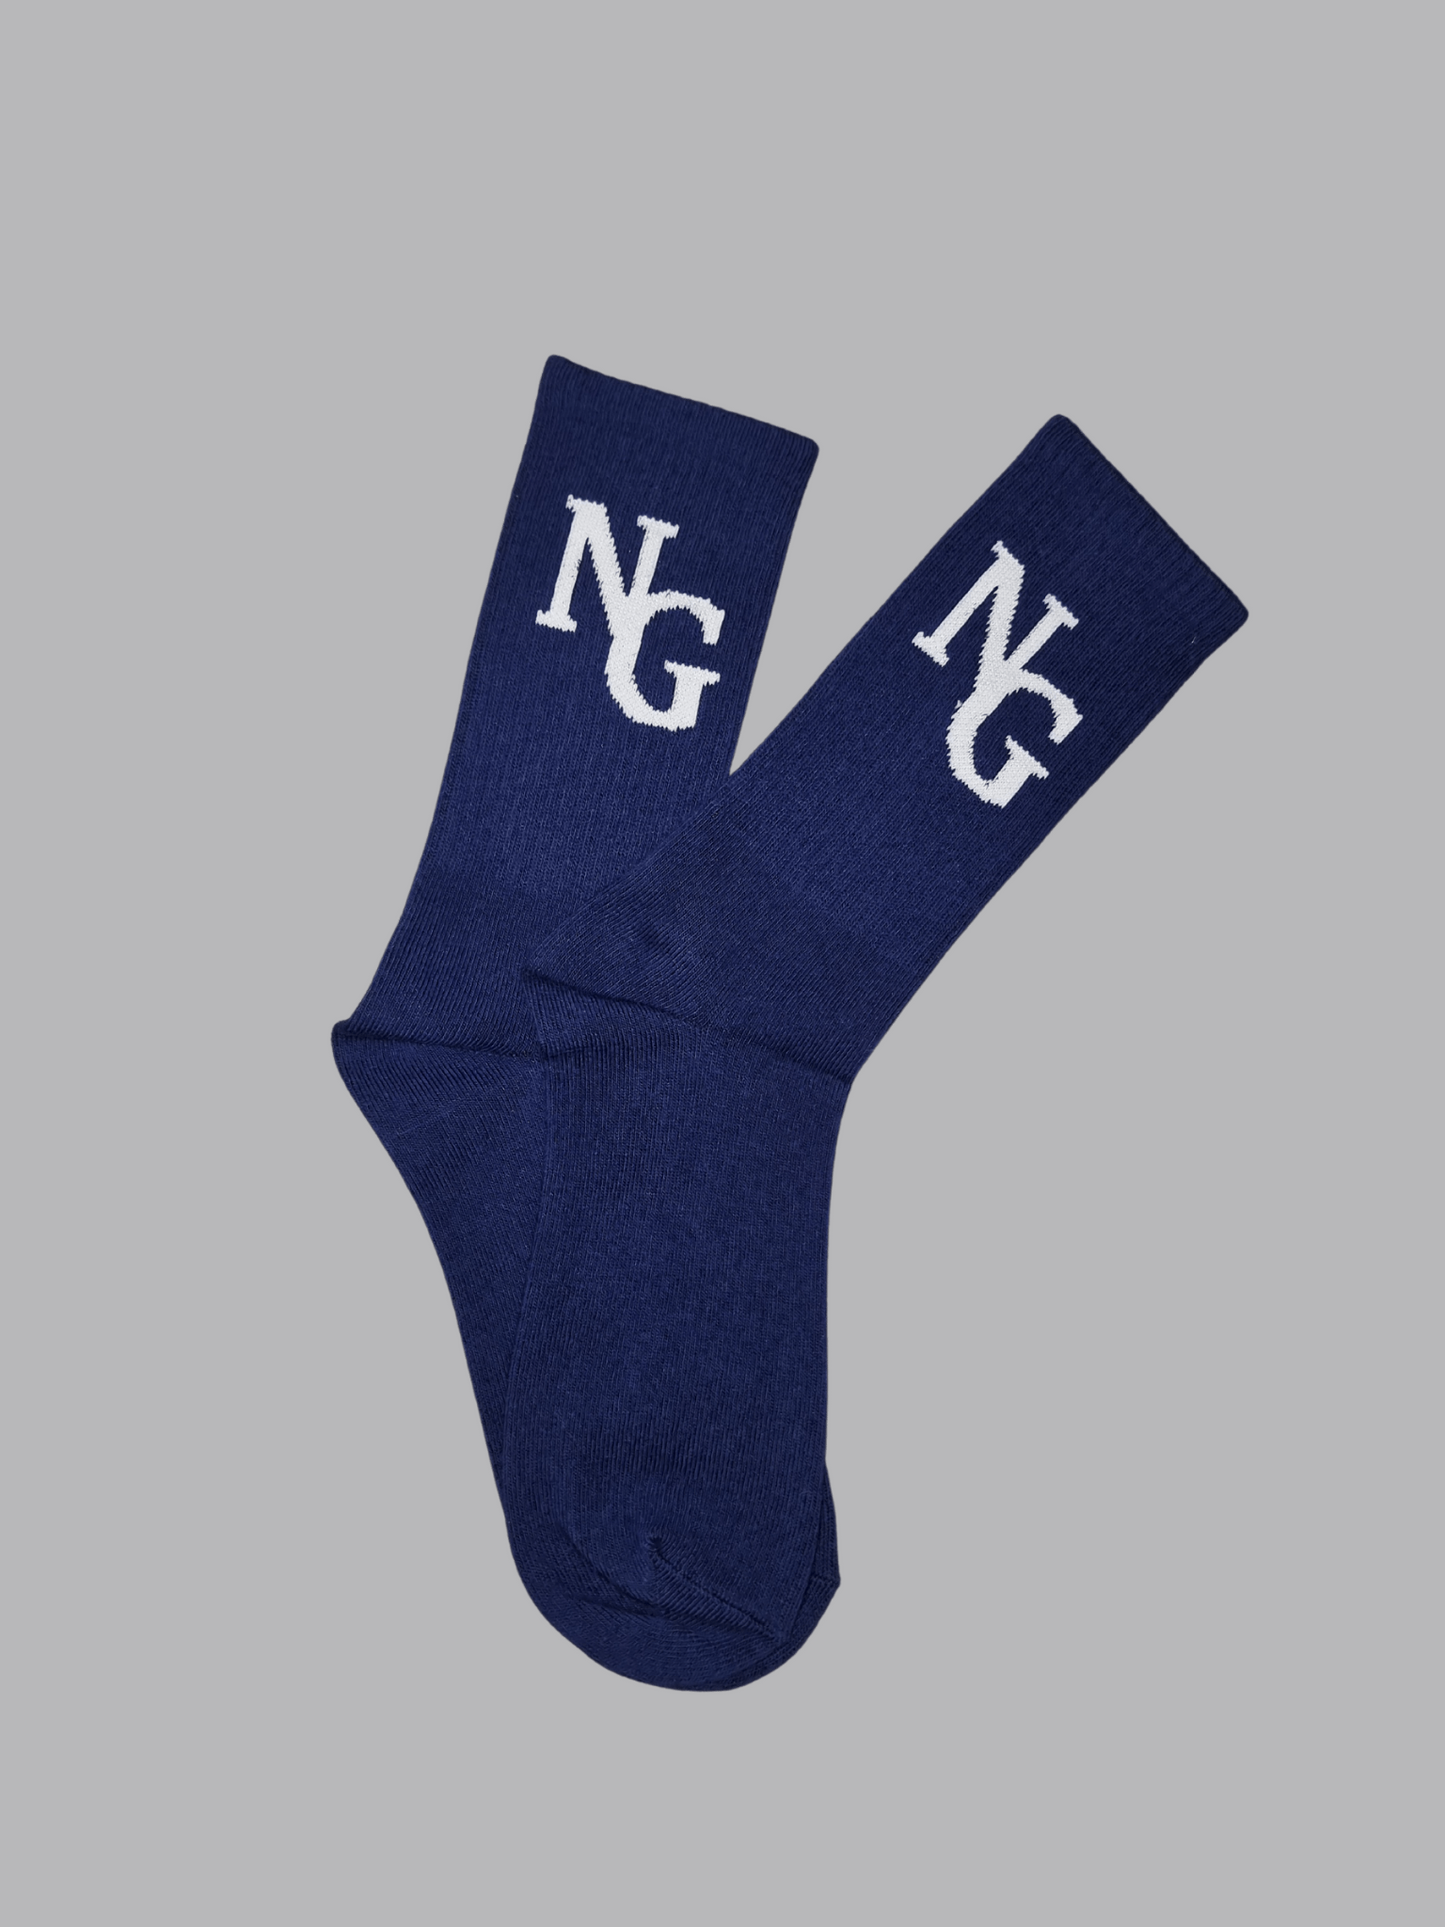 Generation 1 navy blue socks